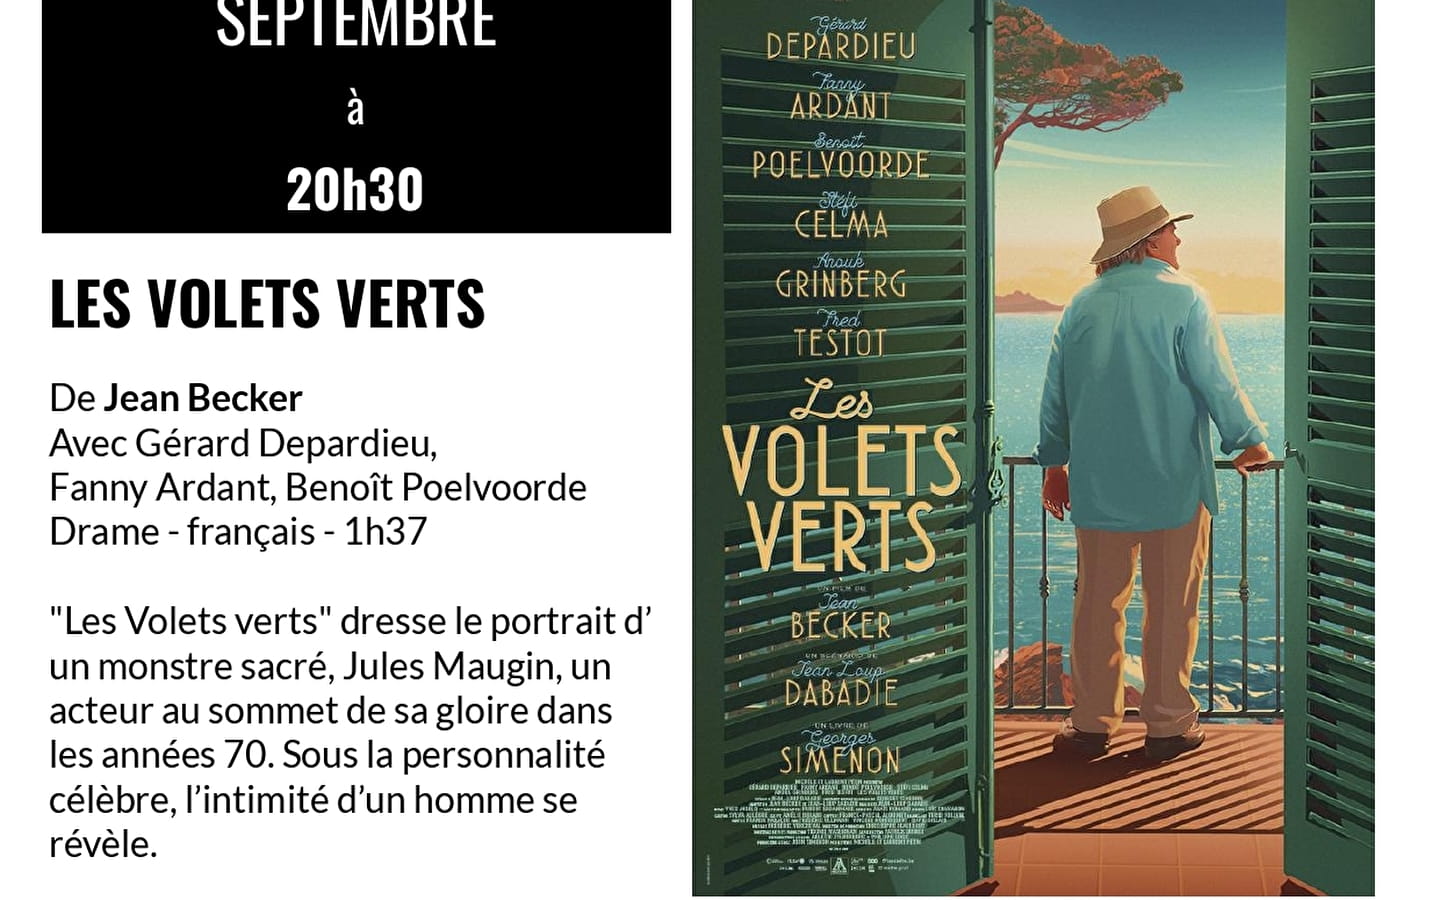 Séance cinéma 'Les volets verts' Chevalerie Saint-Amour Mardi 20 septembre 20h30